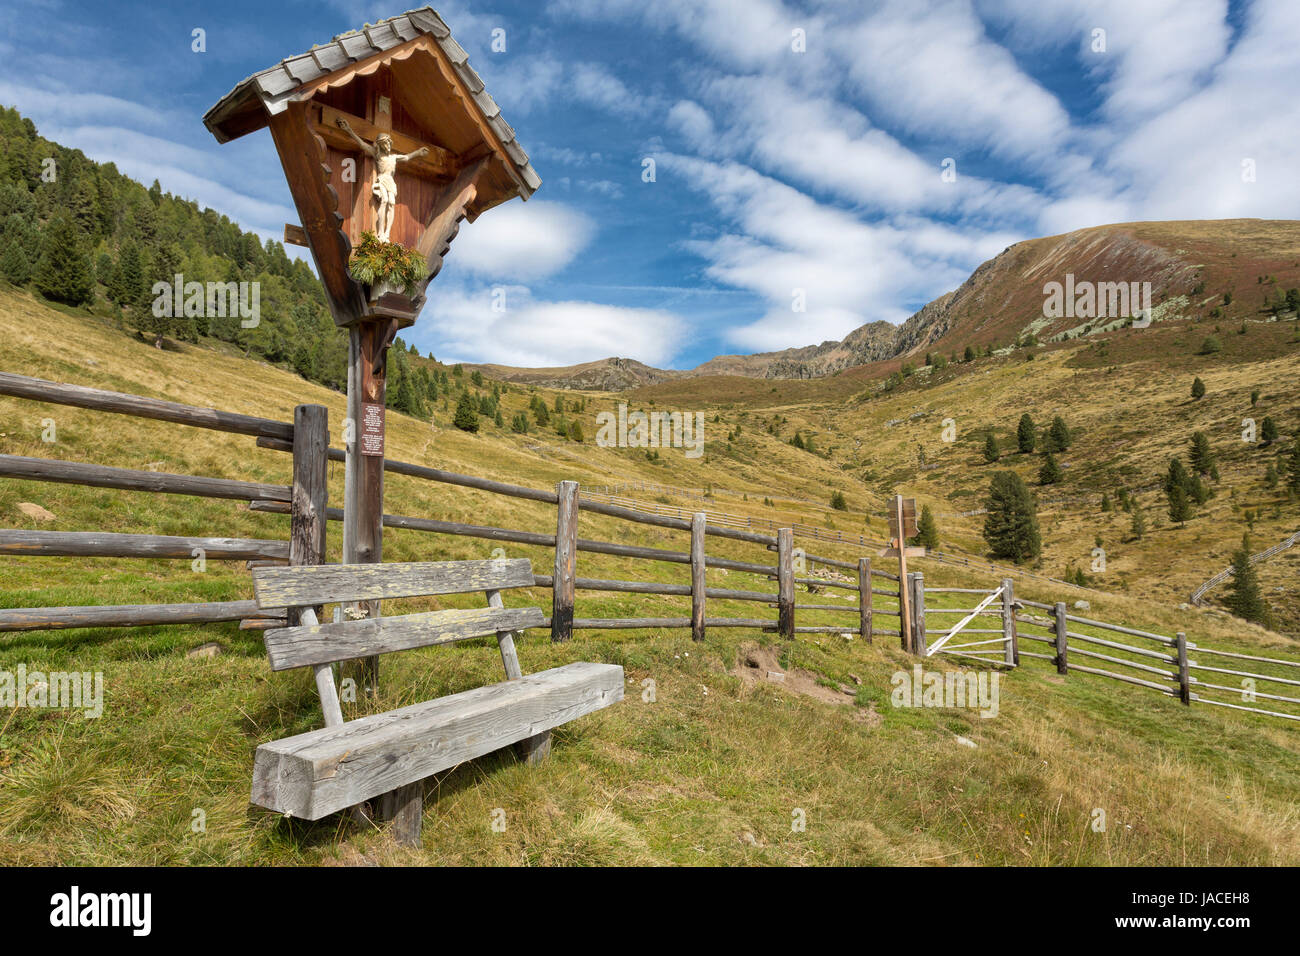 Bildstock mit Sitzbank in den Bergen, Südtirol Stock Photo